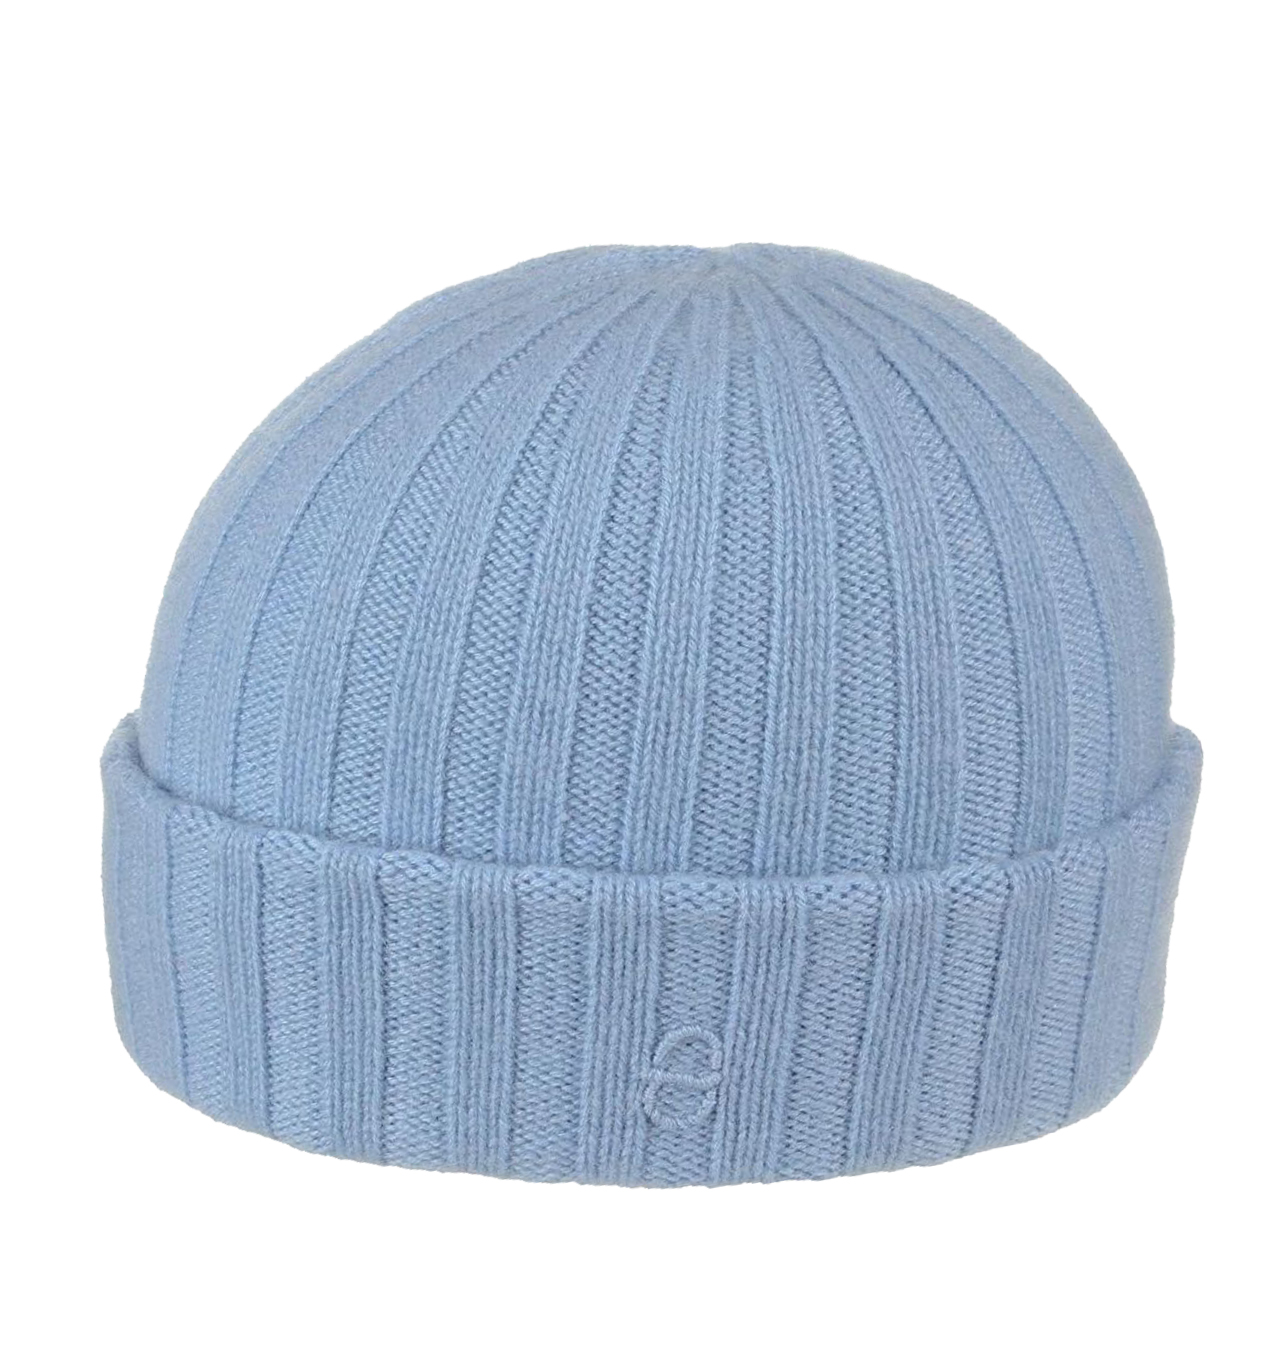 Stetson - Surth Cashmere Knit Hat - Light Blue